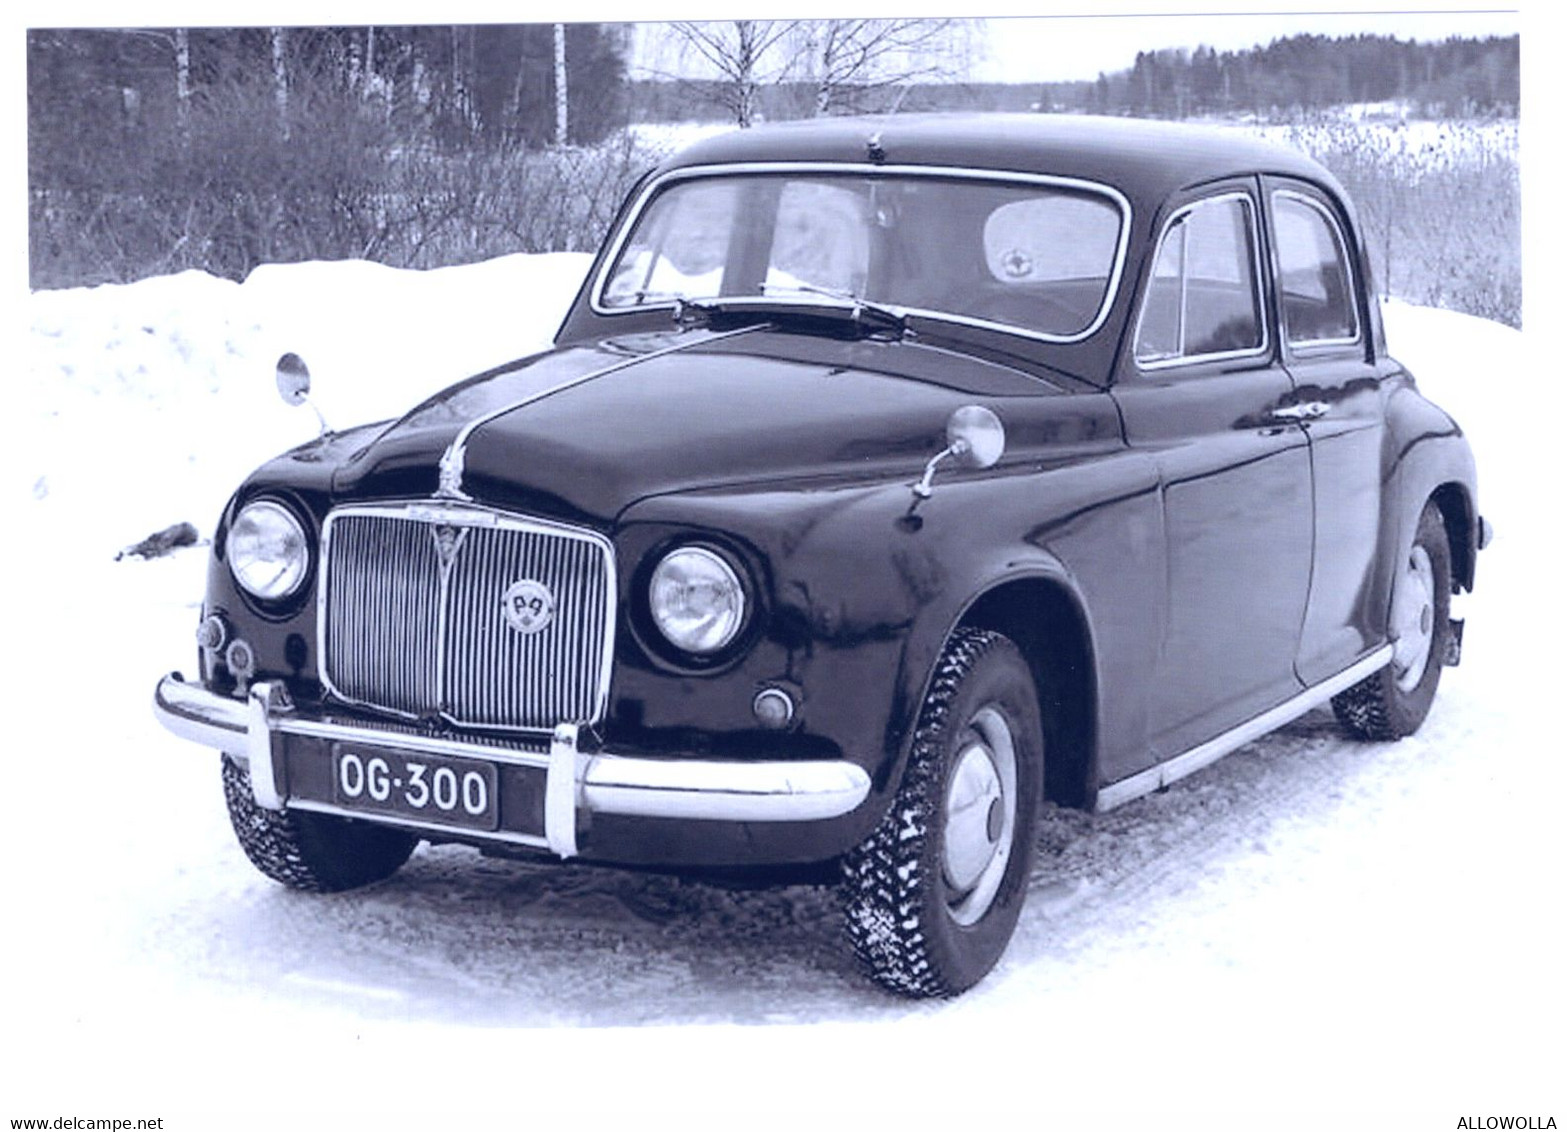 17232 " ROVER 100 (1961)  " RIPRODUZIONE SU CARTA FOTOGRAFICA-FOTO B/N Cm. 10,2 X 15,2 - Automobile